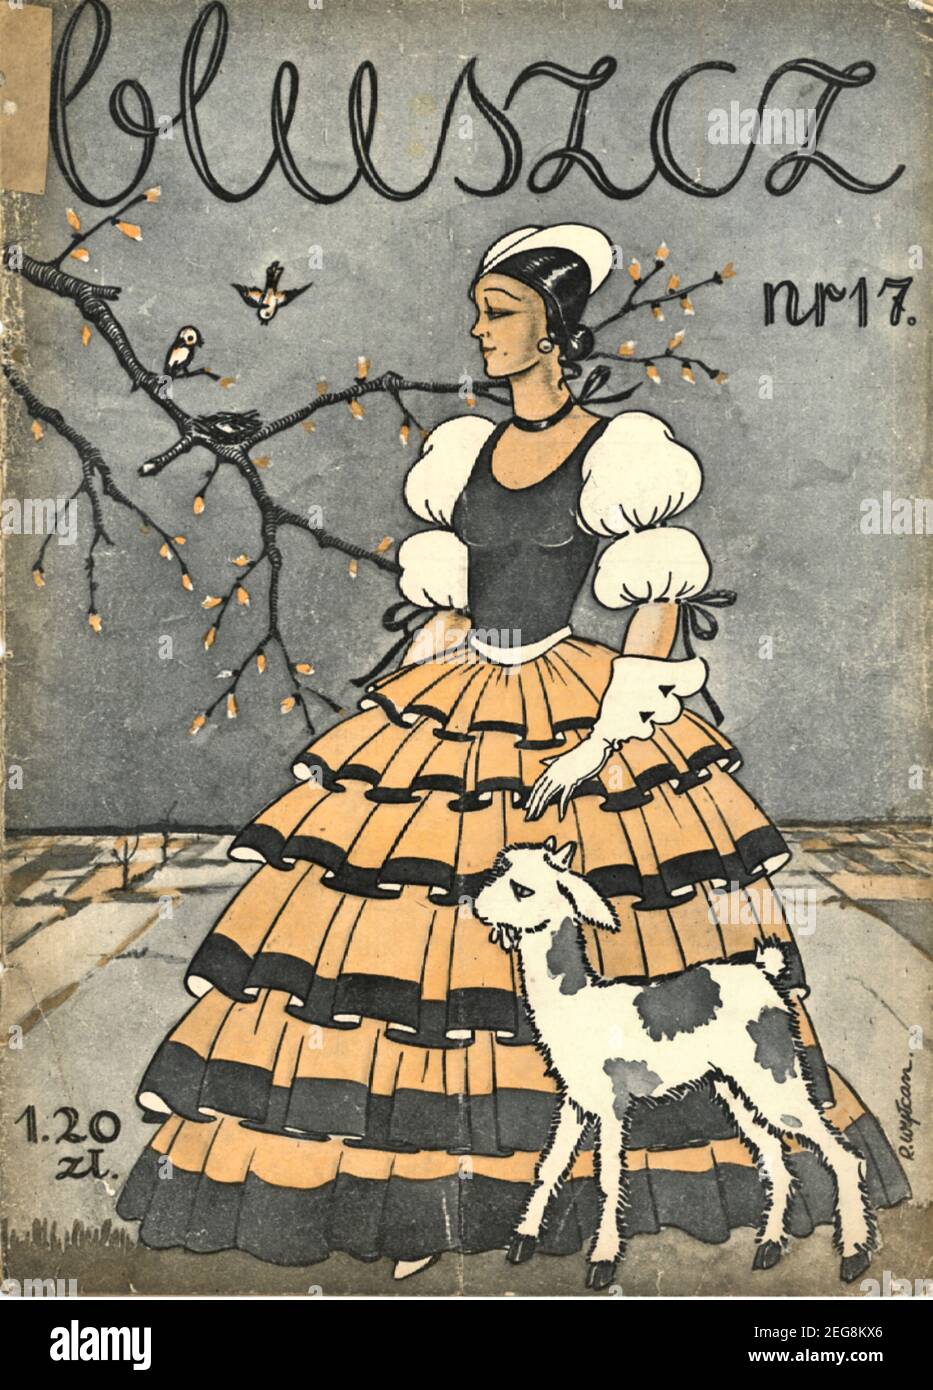 Okładka przedwojennego magynu dla kobiet Bluszcz 1933, lata 30te, couverture du magazine polonais d'avant-guerre pour femmes Bluszcz style art déco Banque D'Images